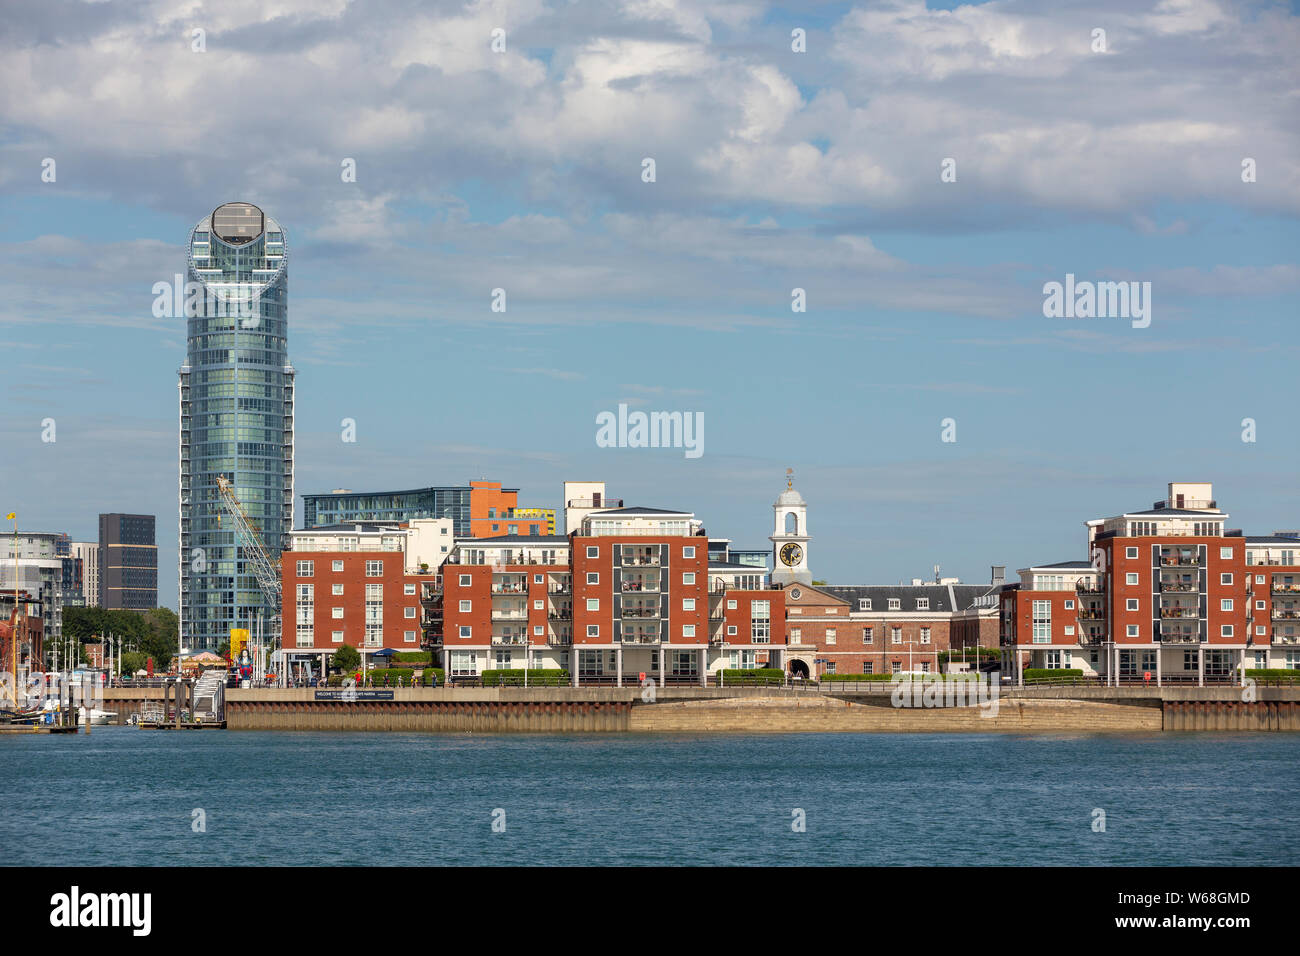 Panoramablick auf den Gunwharf Quays in Portsmouth, Hampshire. Sonnigen Sommernachmittag mit Massen an diesem beliebten Wahrzeichen. Stockfoto